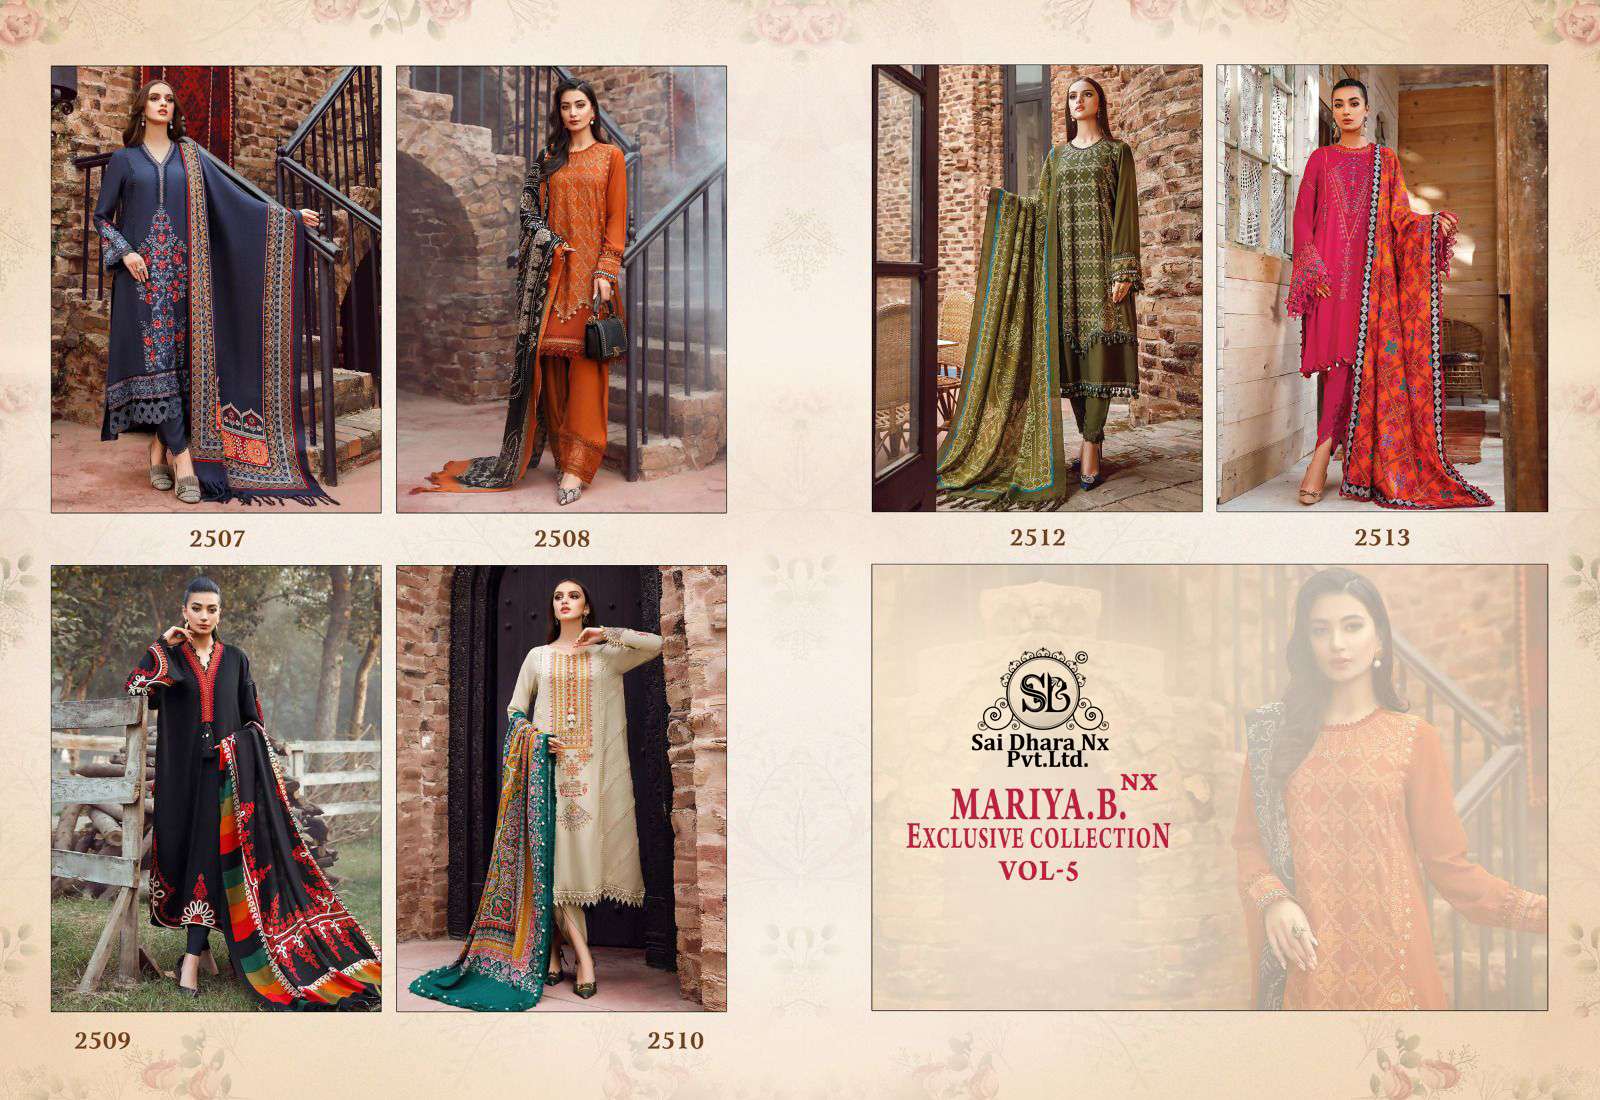 maria b presents latest 3 piece pakistani suit wholesale shop in surat - SaiDharaNx 